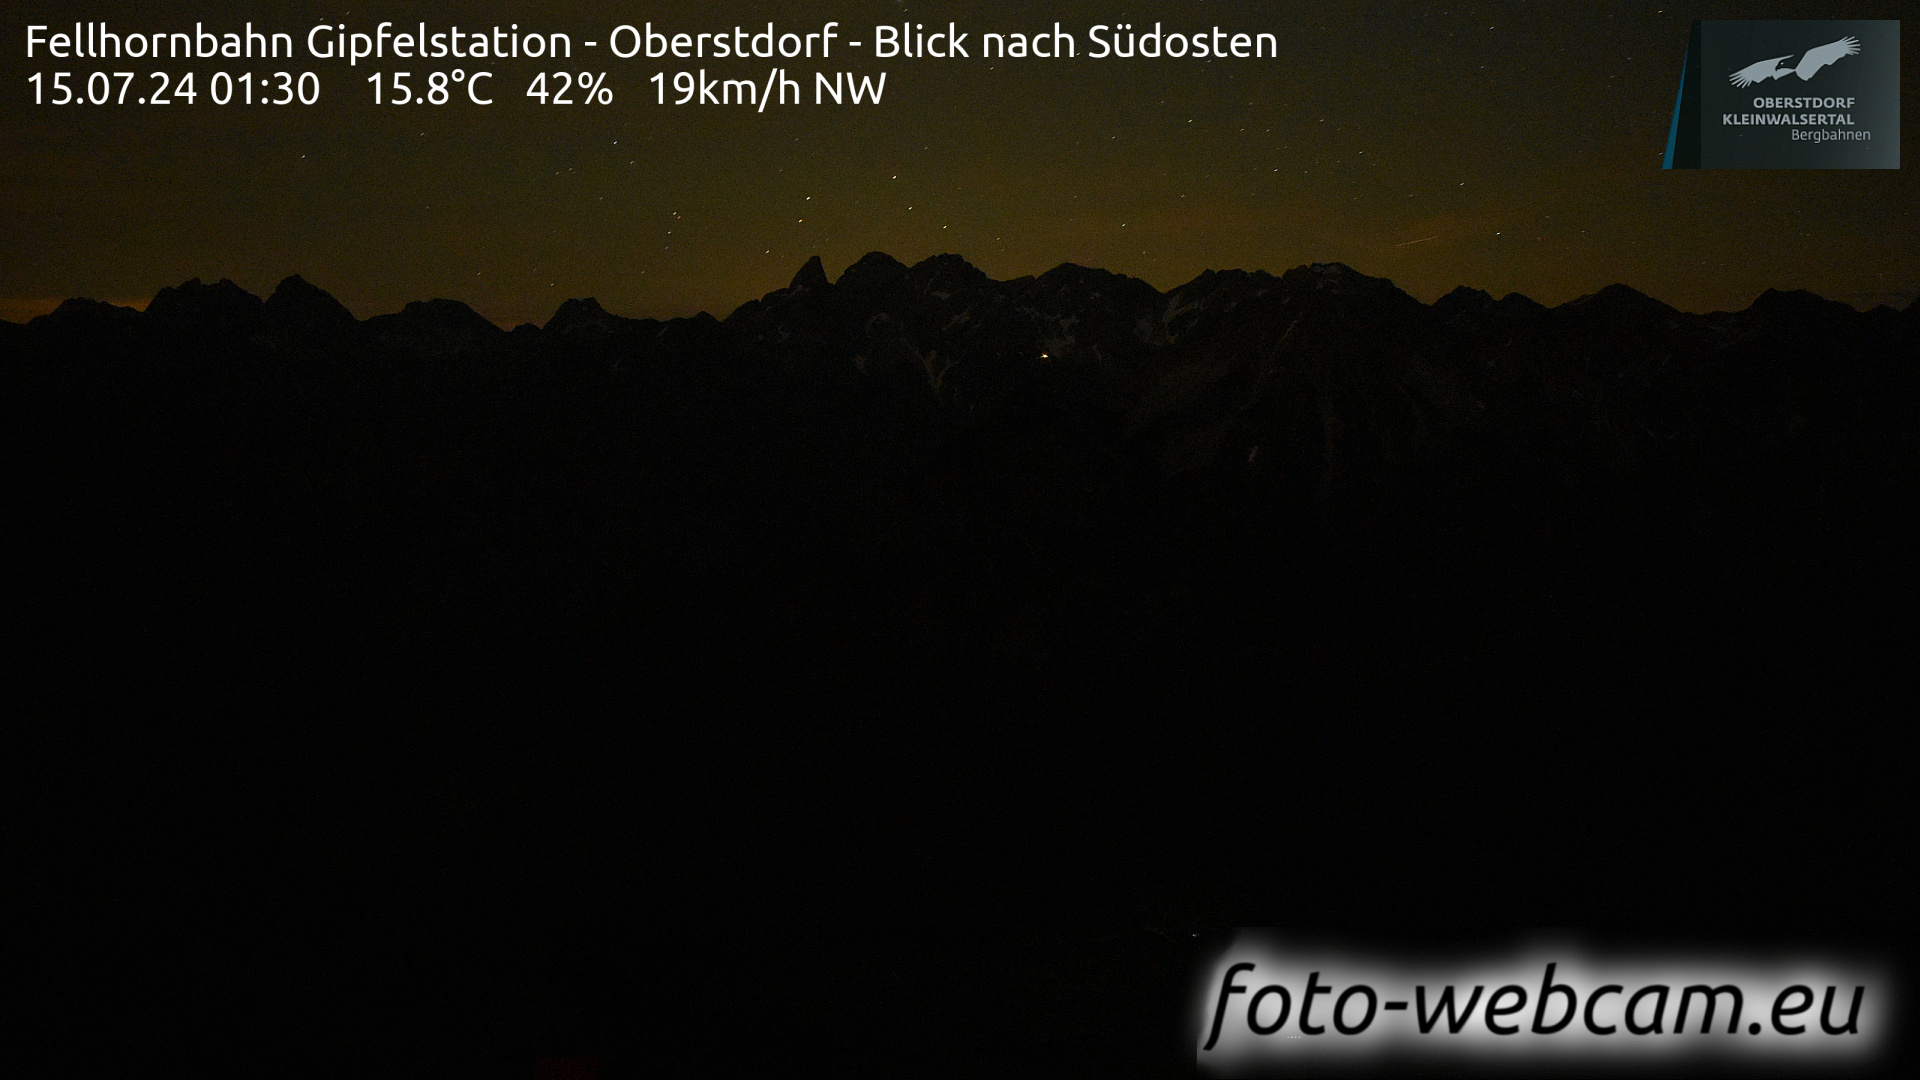 Oberstdorf Thu. 01:49